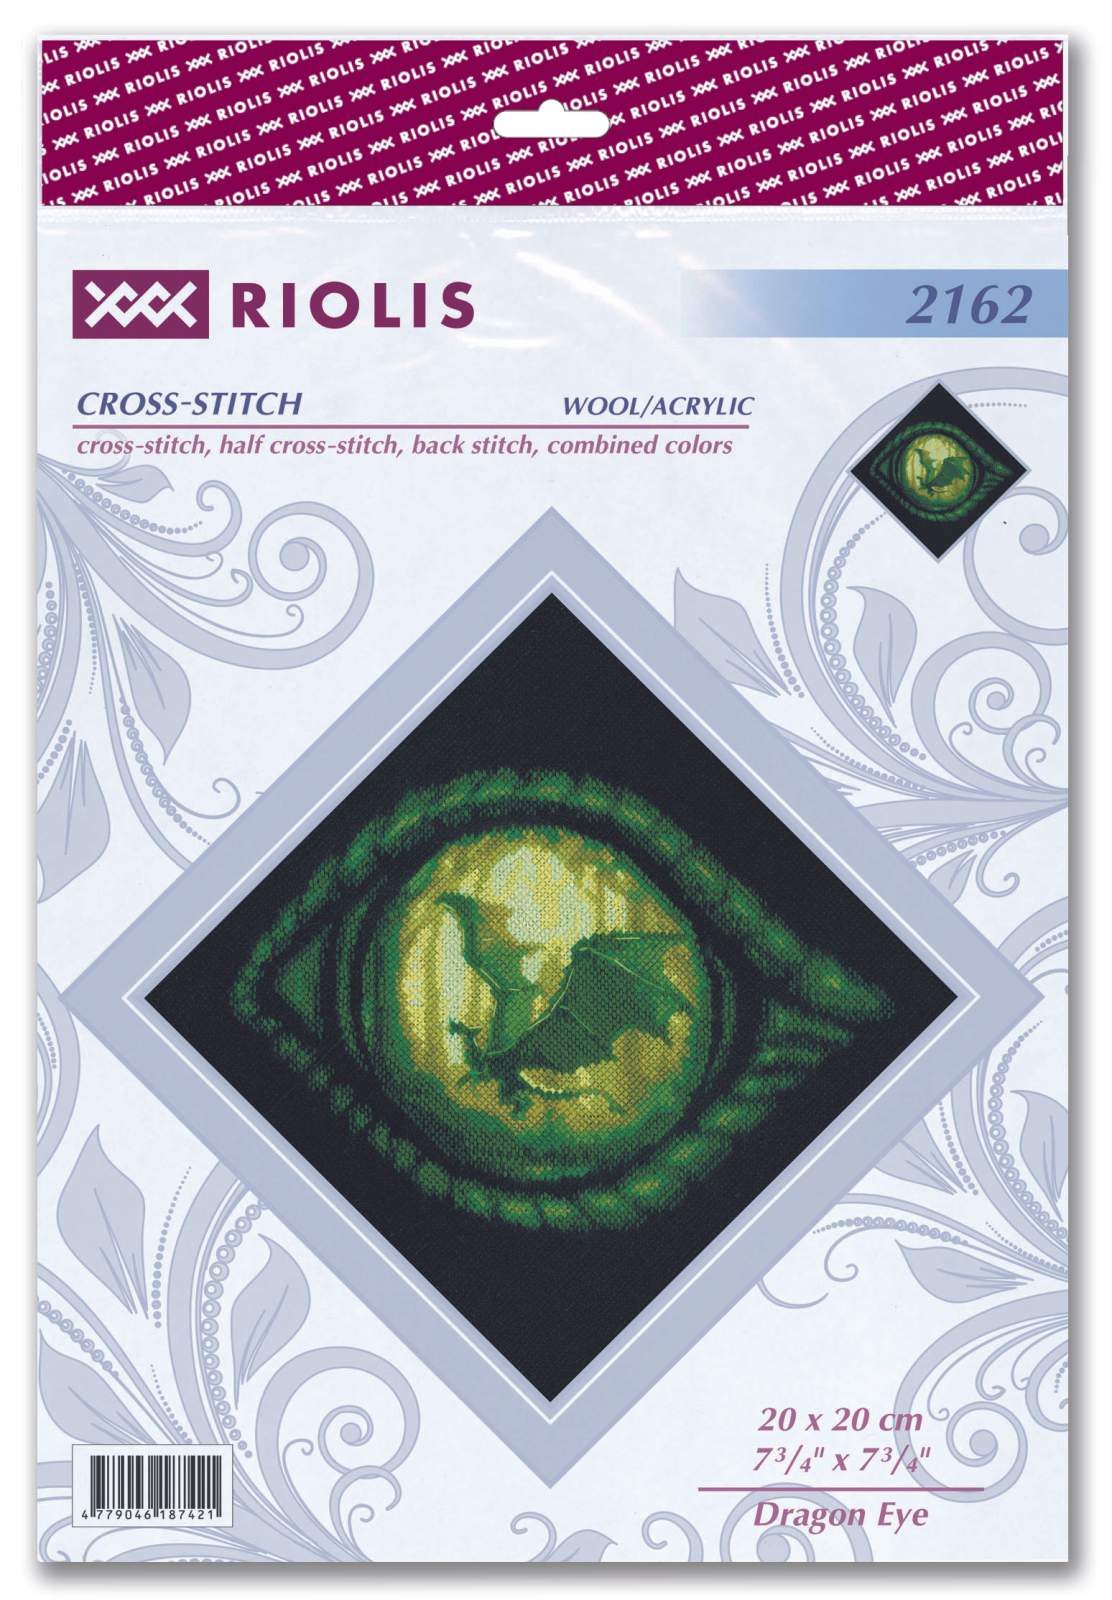 Cross Stitch Kit - "Dragon Eye" - Riolis 2162